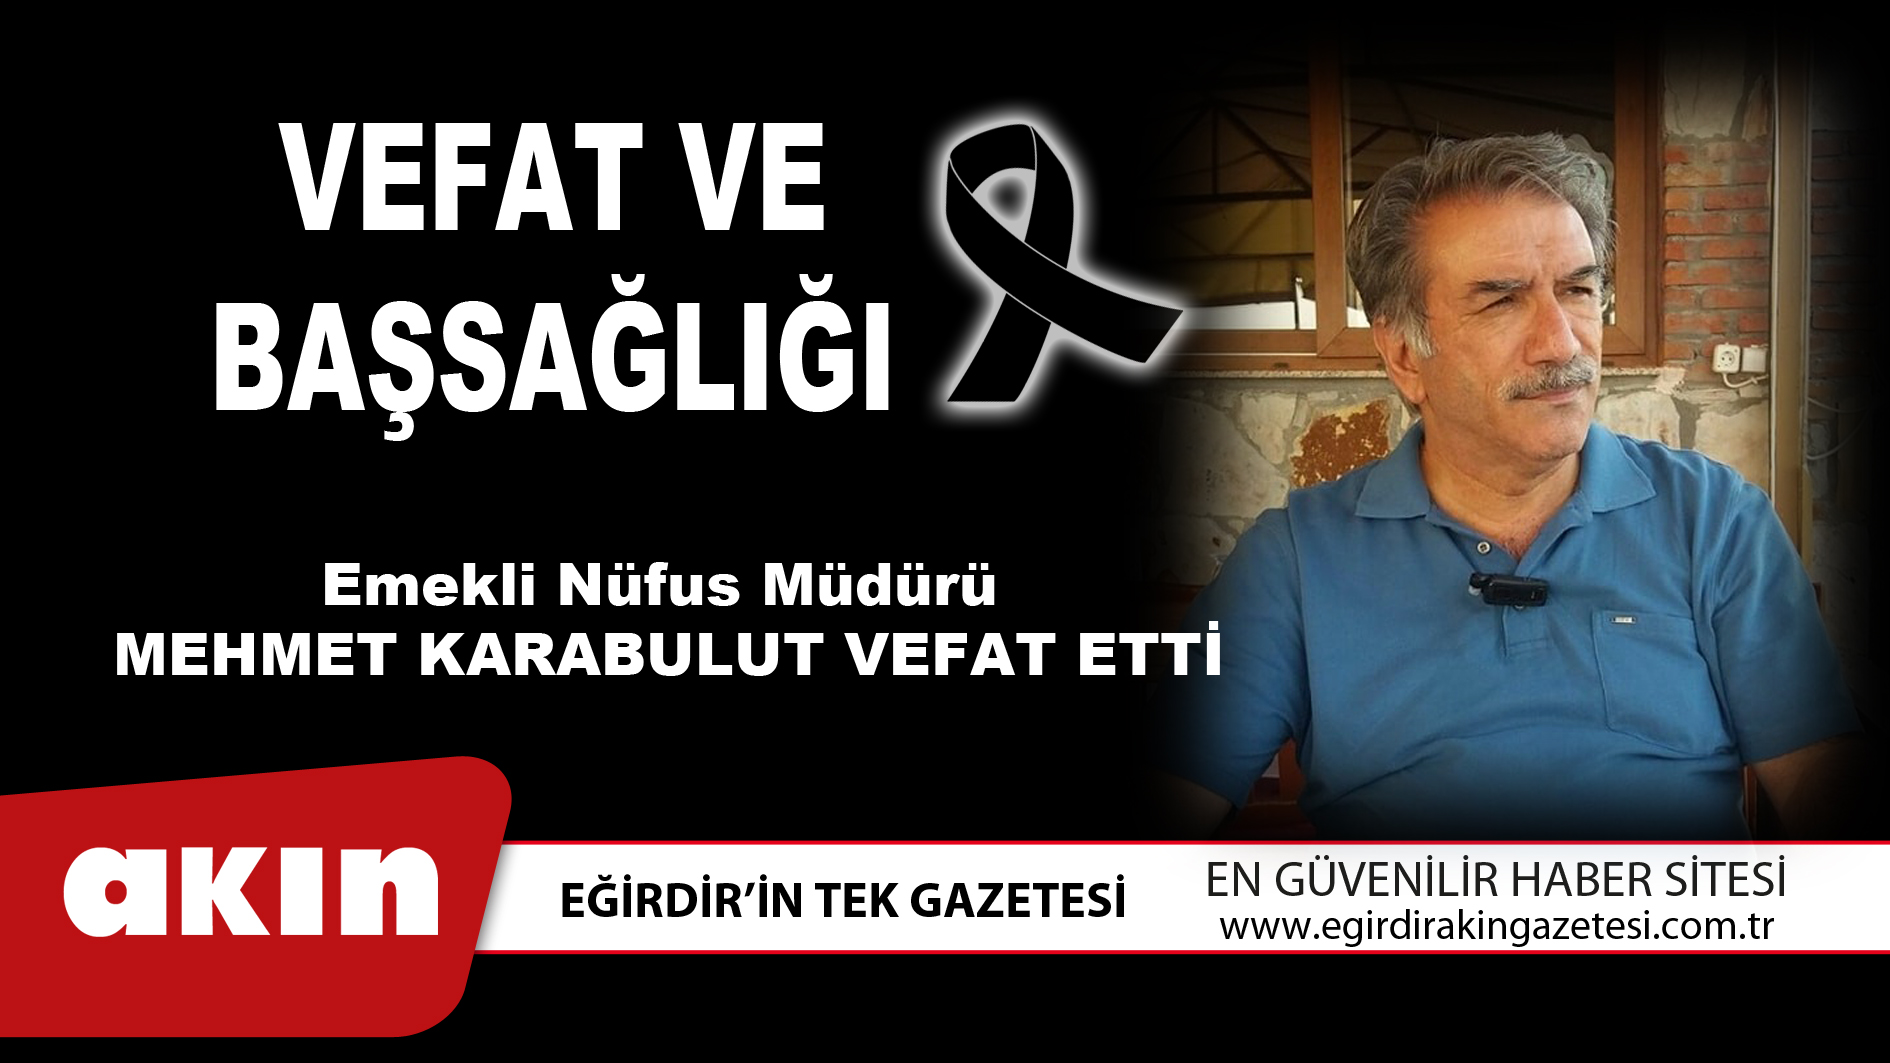 Emekli Nüfus Müdürü Mehmet Karabulut Vefat Etti